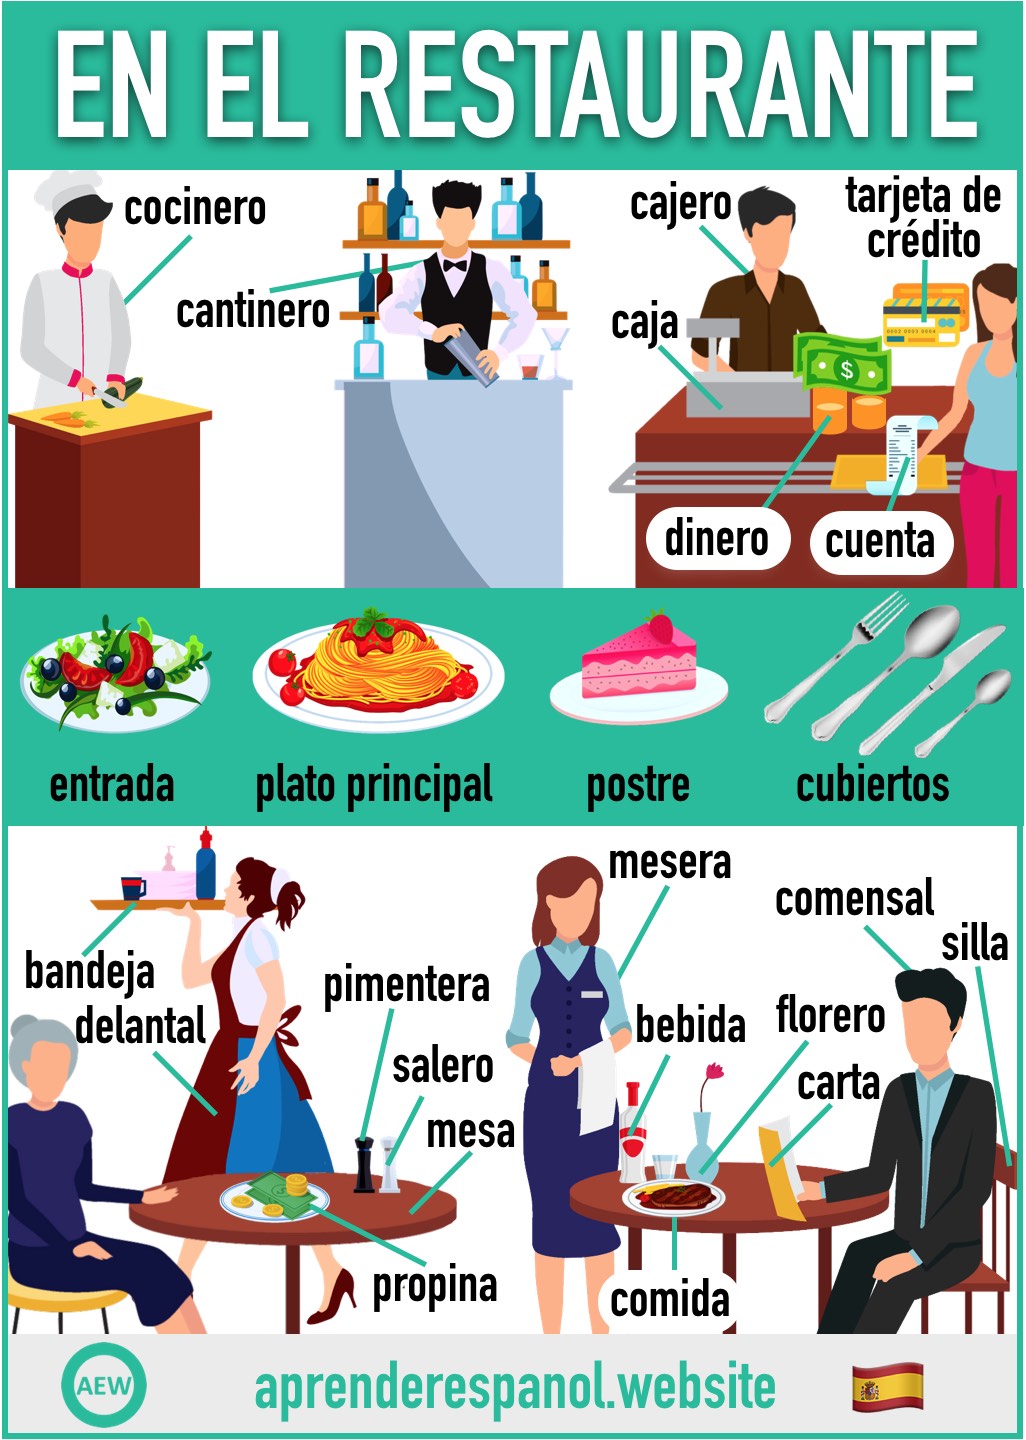 en el restaurante en español - vocabulario de los objetos en el restaurante en español - aprender español website